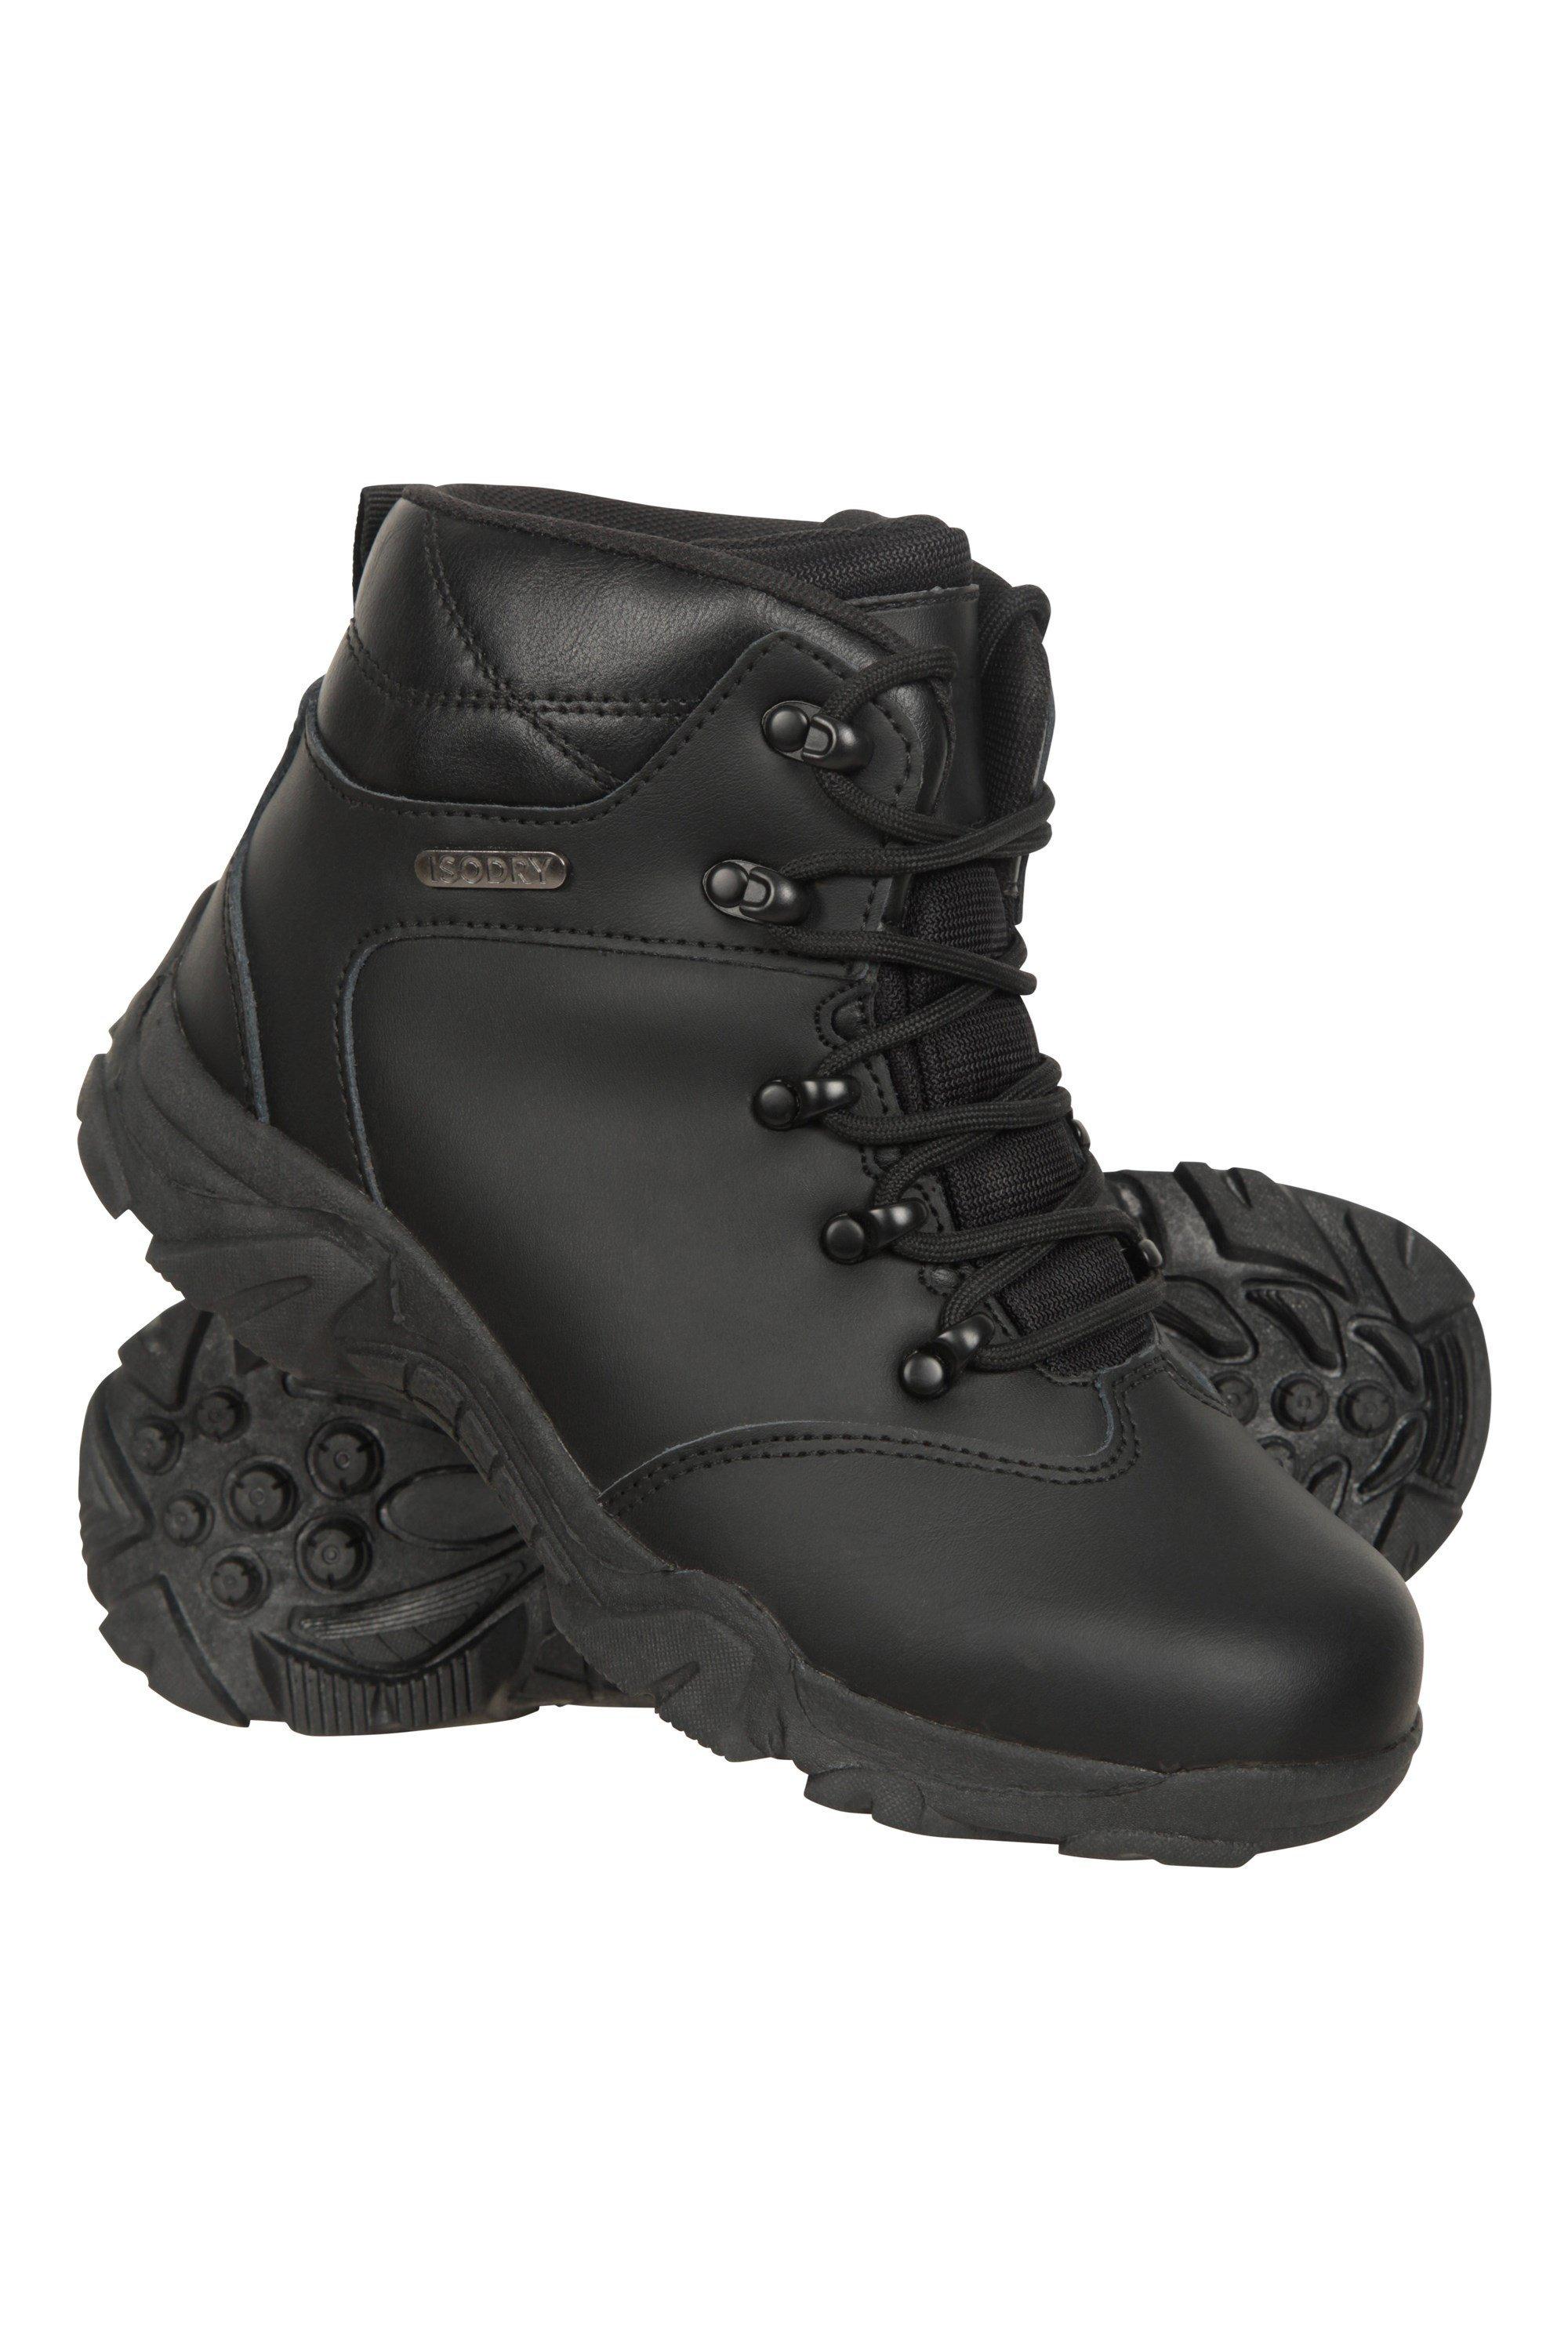 Водонепроницаемые кожаные прогулочные ботинки для походов Mountain Warehouse, черный data warehouse analyst